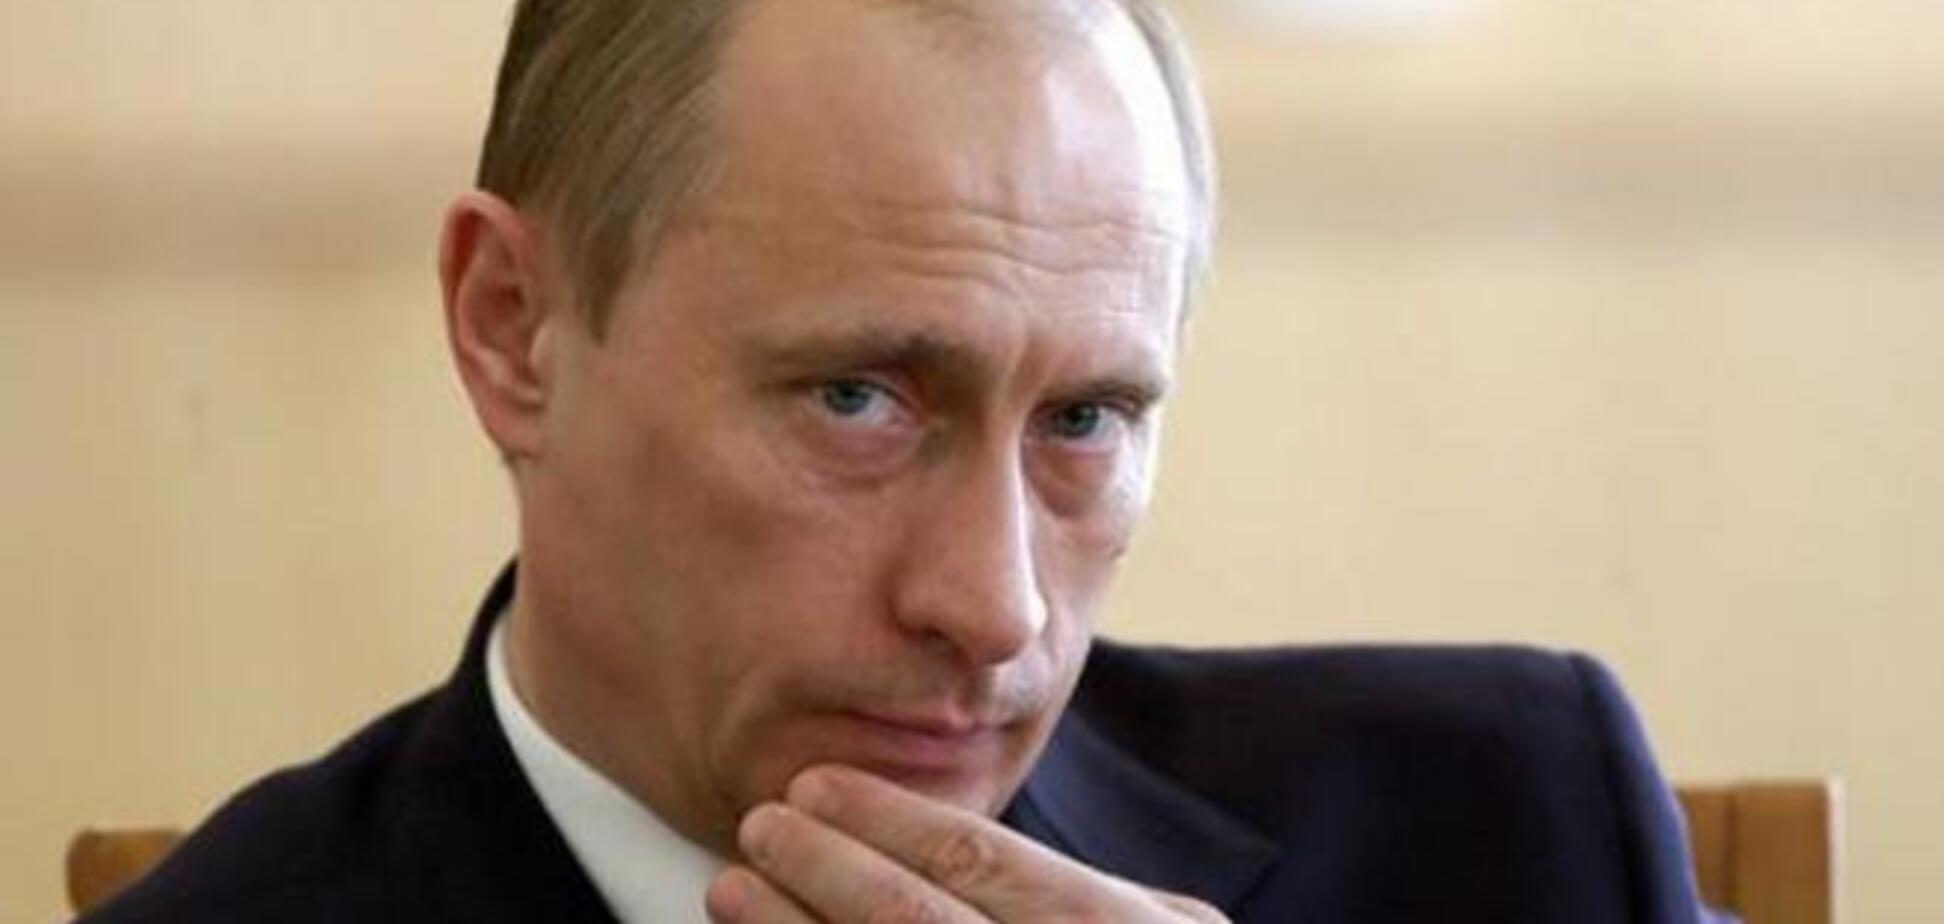 Звание главного злодея мира повышает самооценку Путина – российский политолог